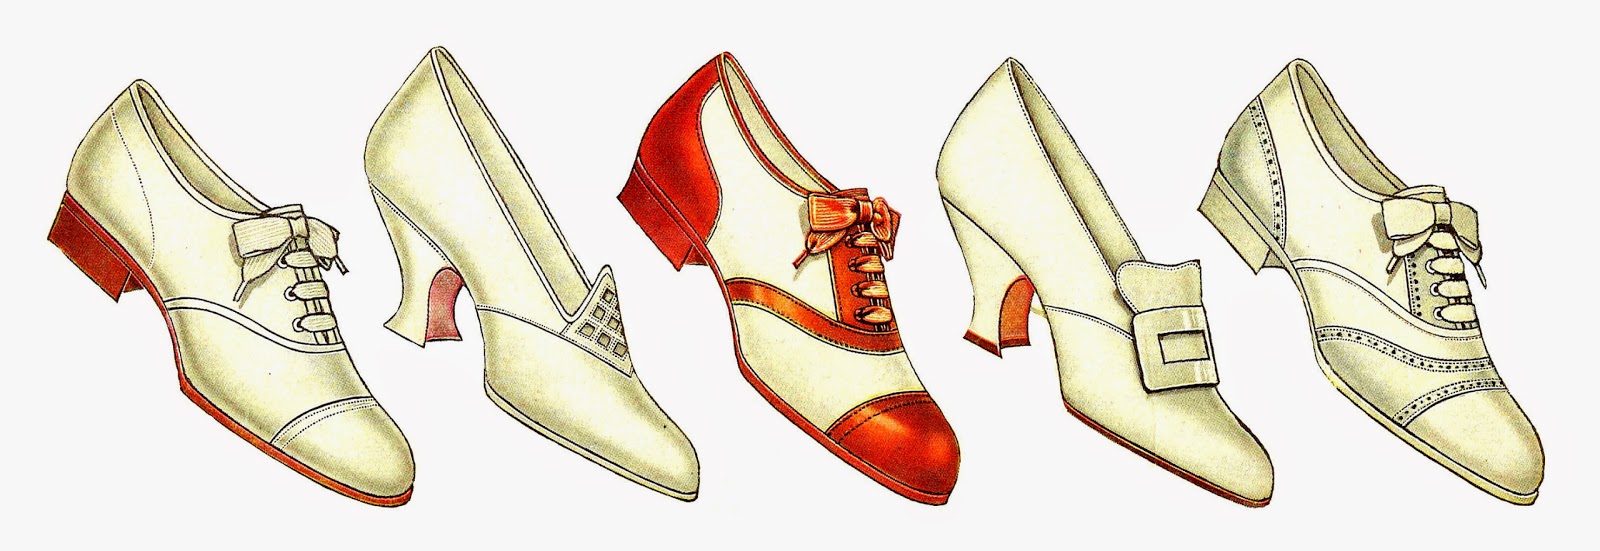 Antique Images Free Fashion Clip Art 5 Vintage Women S Shoe